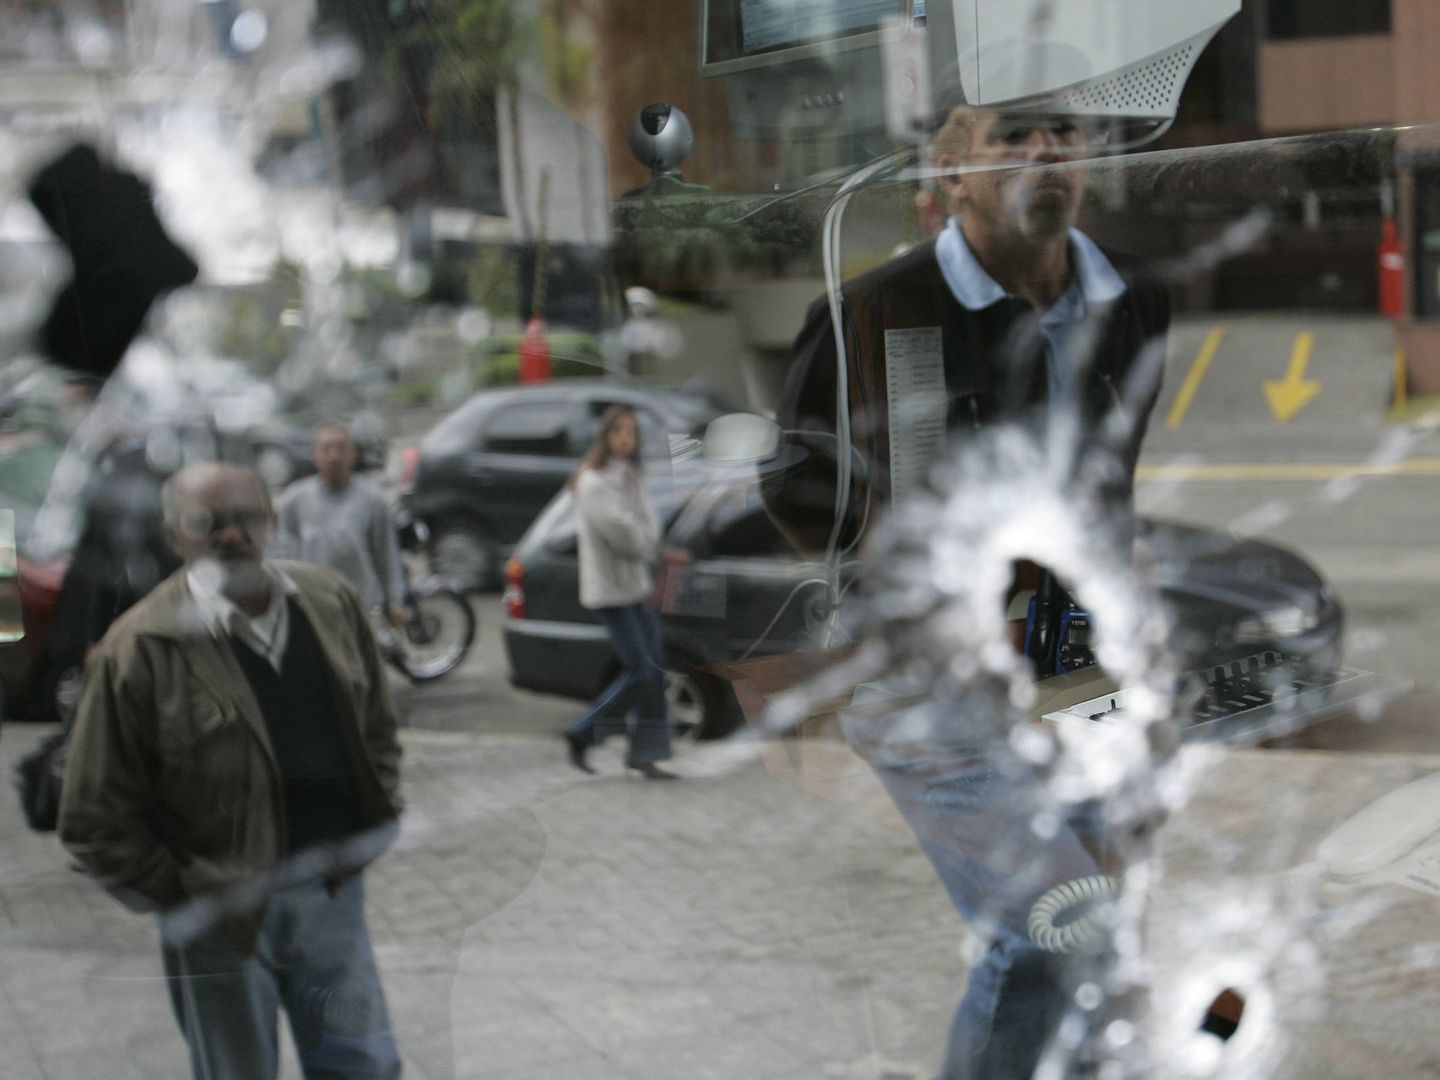 Agujeros de bala en una oficina ametrallada por una banda criminal organizada en Sao Paulo, en mayo de 2006. (Reuters)